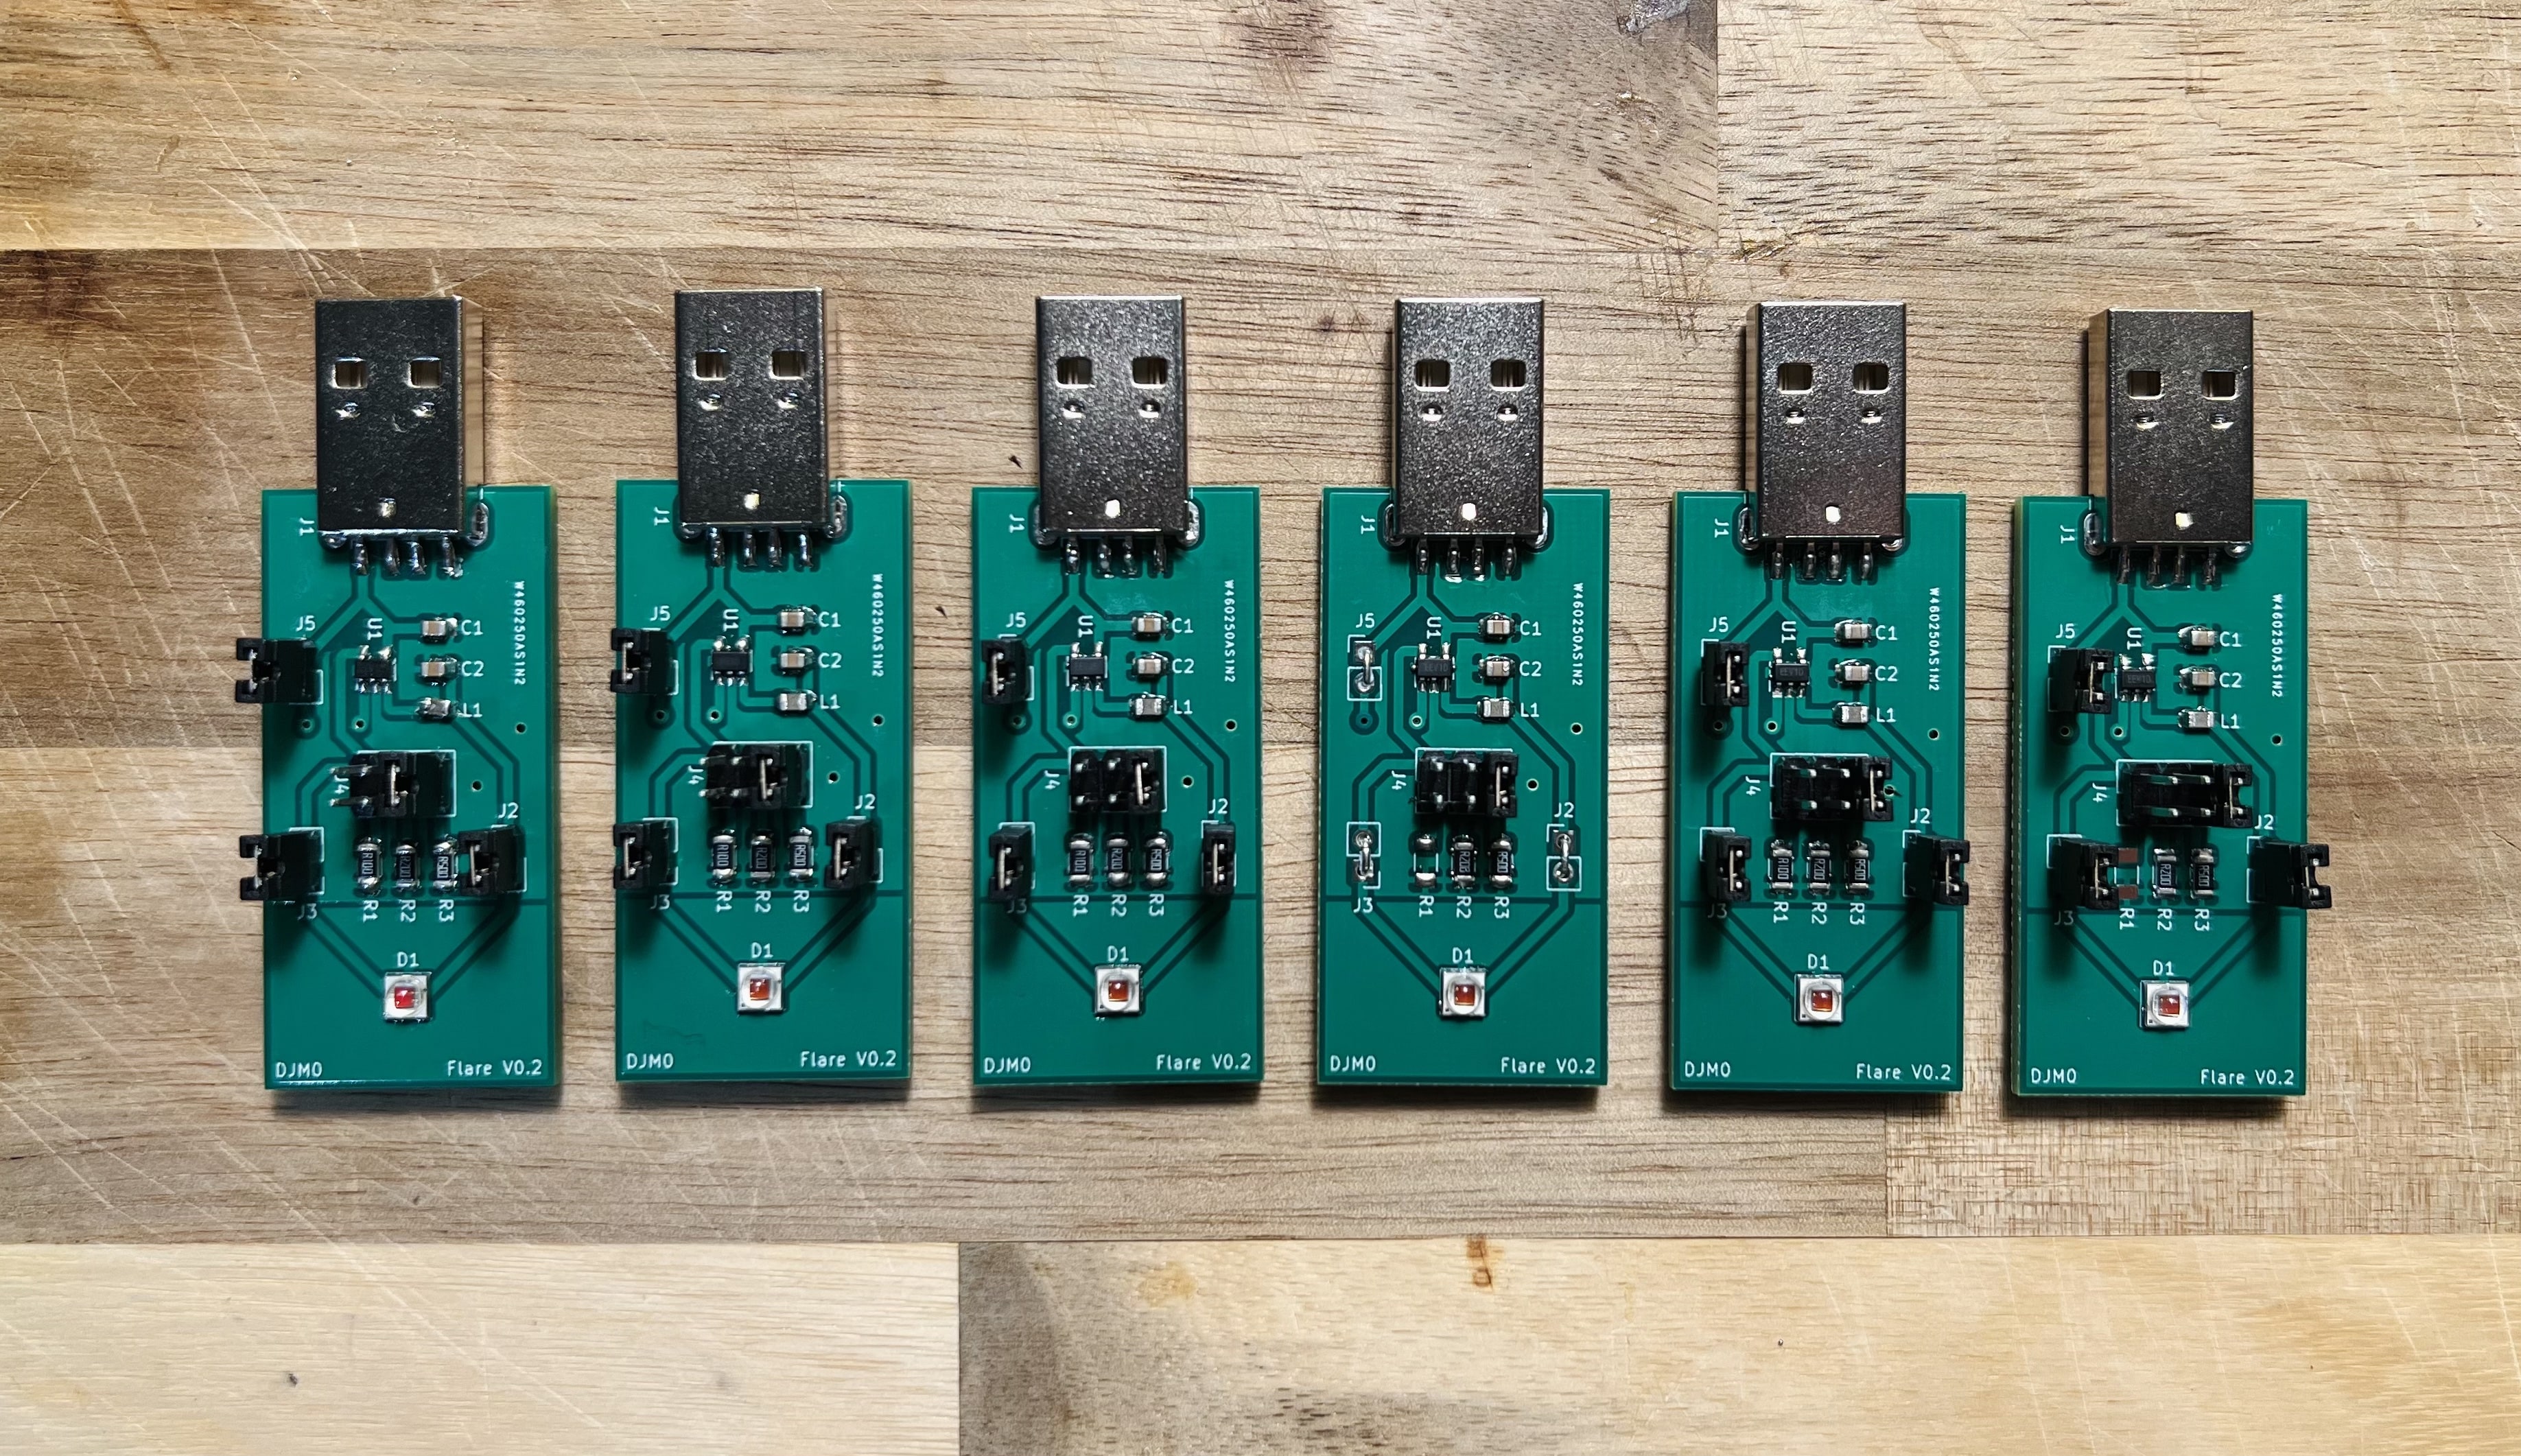 Six Flare V0.2 assembled modules